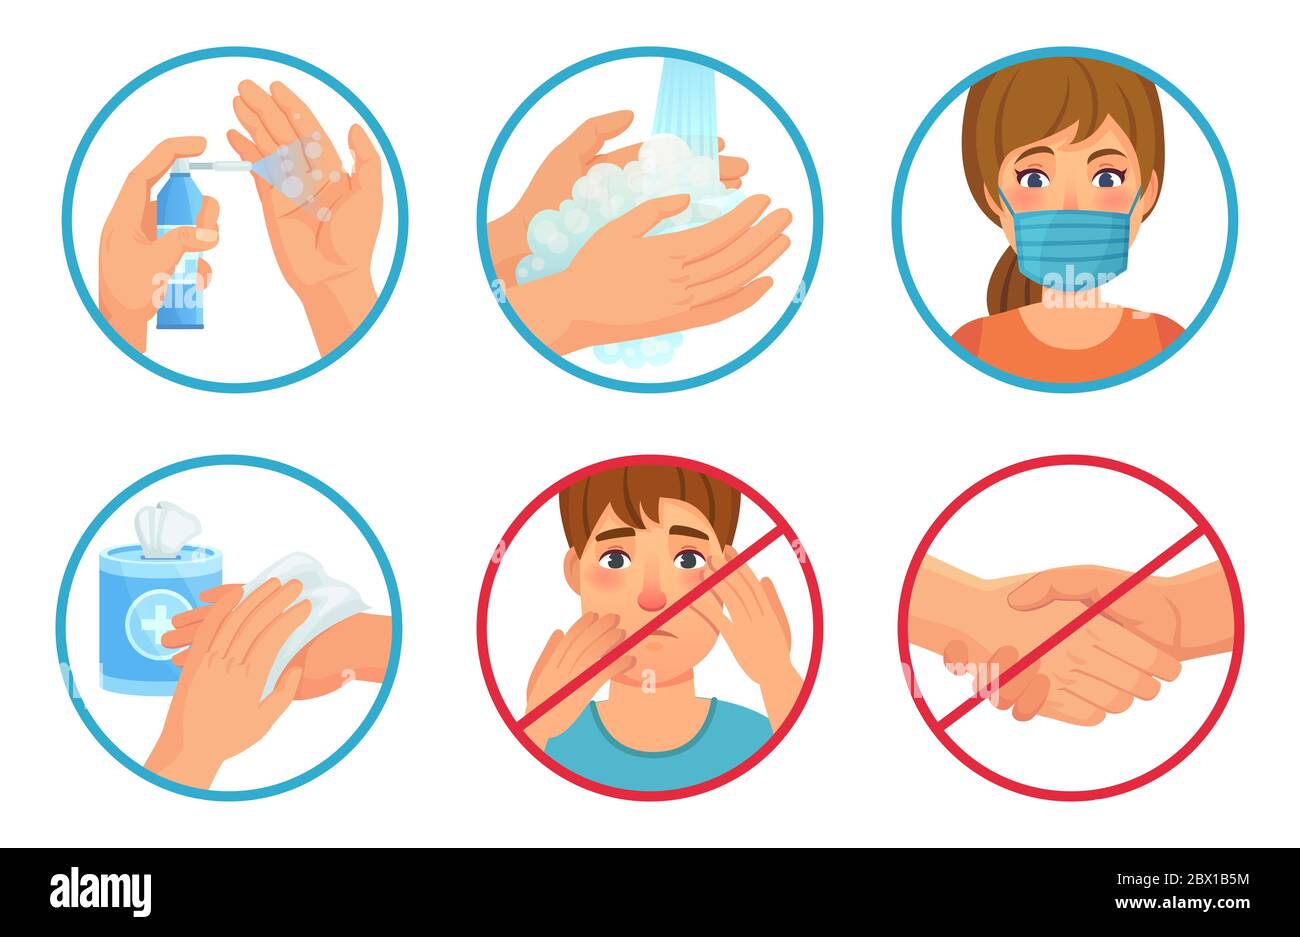 Prävention von Coronavirus-Infektion. Verwenden Sie Gesichtsmaske, Desinfektionsmittel und waschen Sie Ihre Hände. Gesicht und Handschlag nicht berühren, SARS-CoV-2-Vektor verhindern Stock Vektor